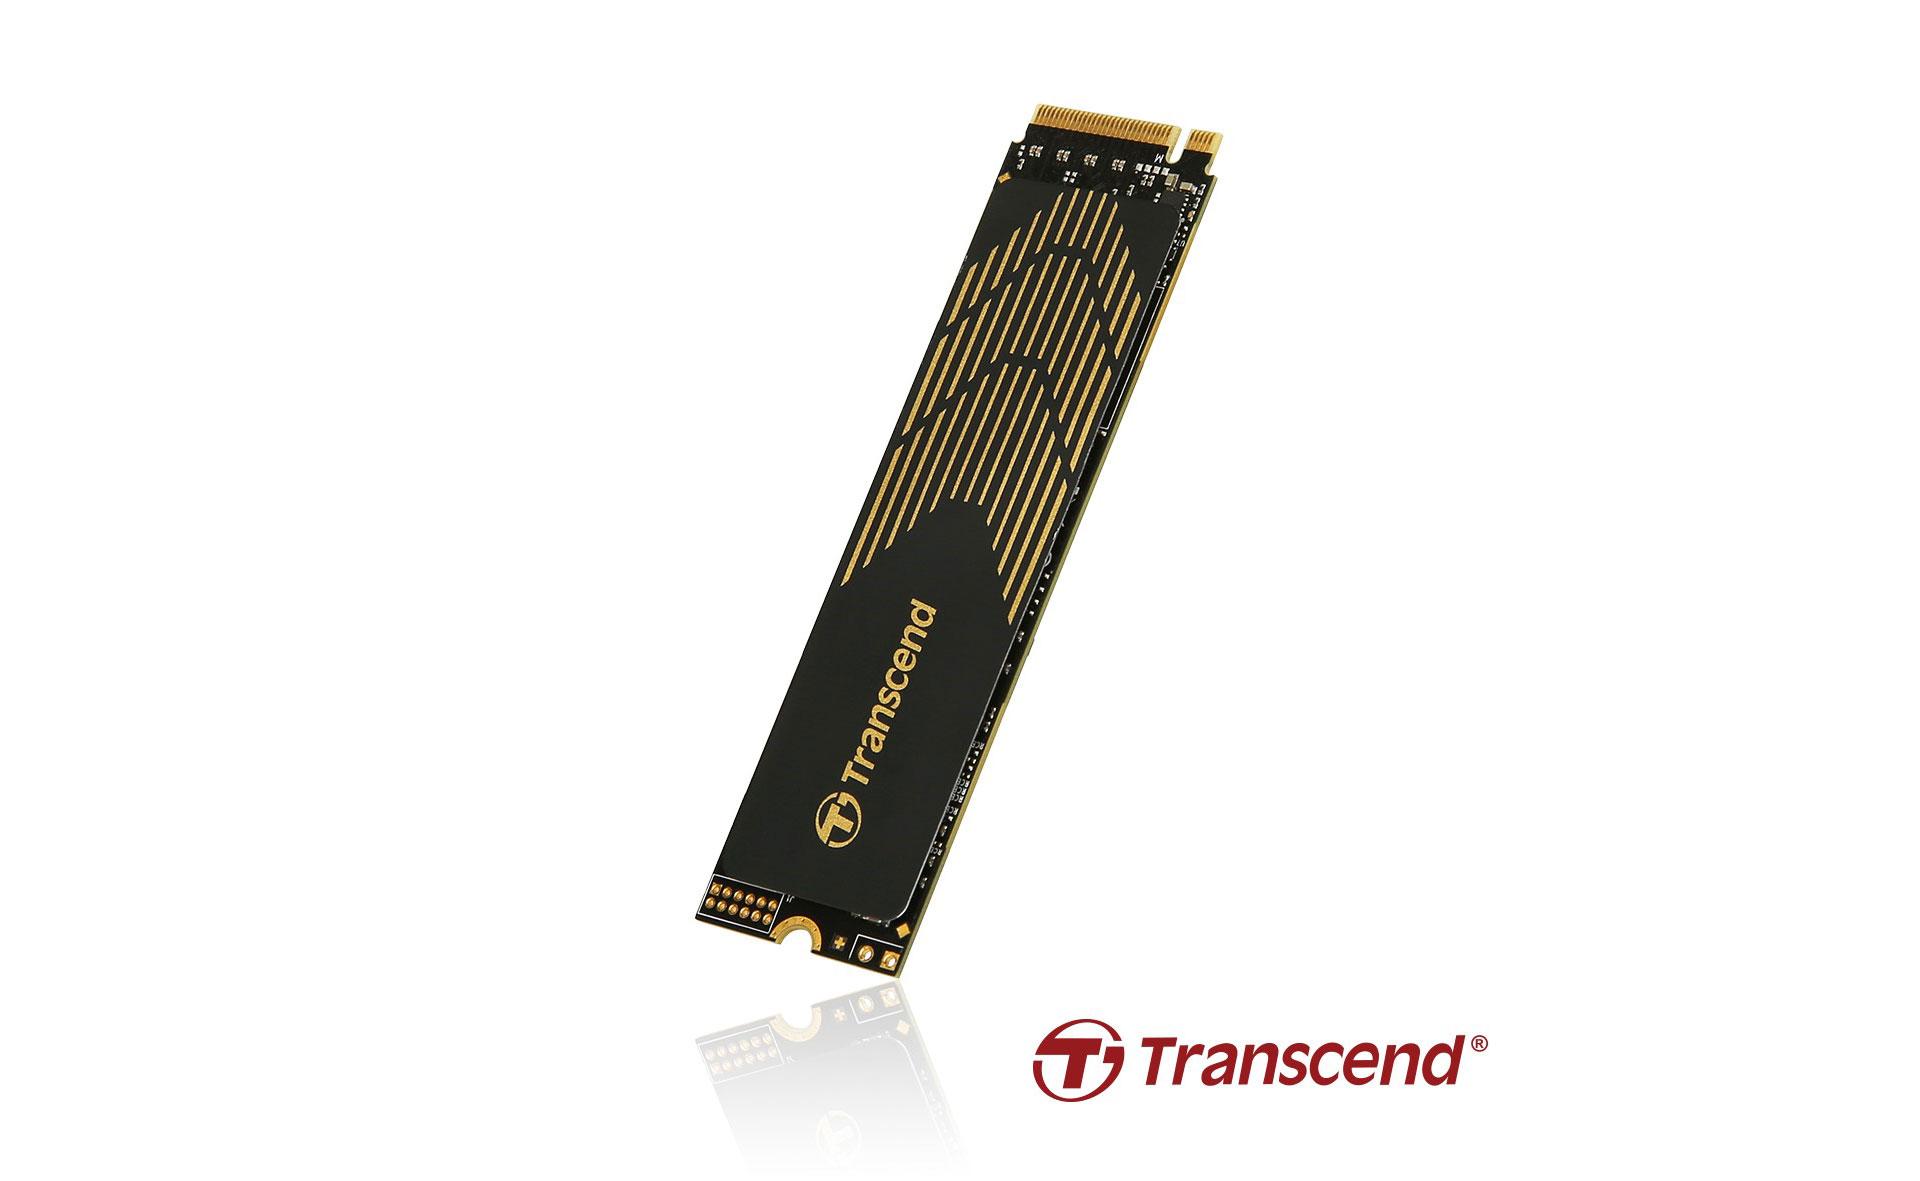 Новый скоростной M.2 NVMe SSD появился у Transcend — MTE240S